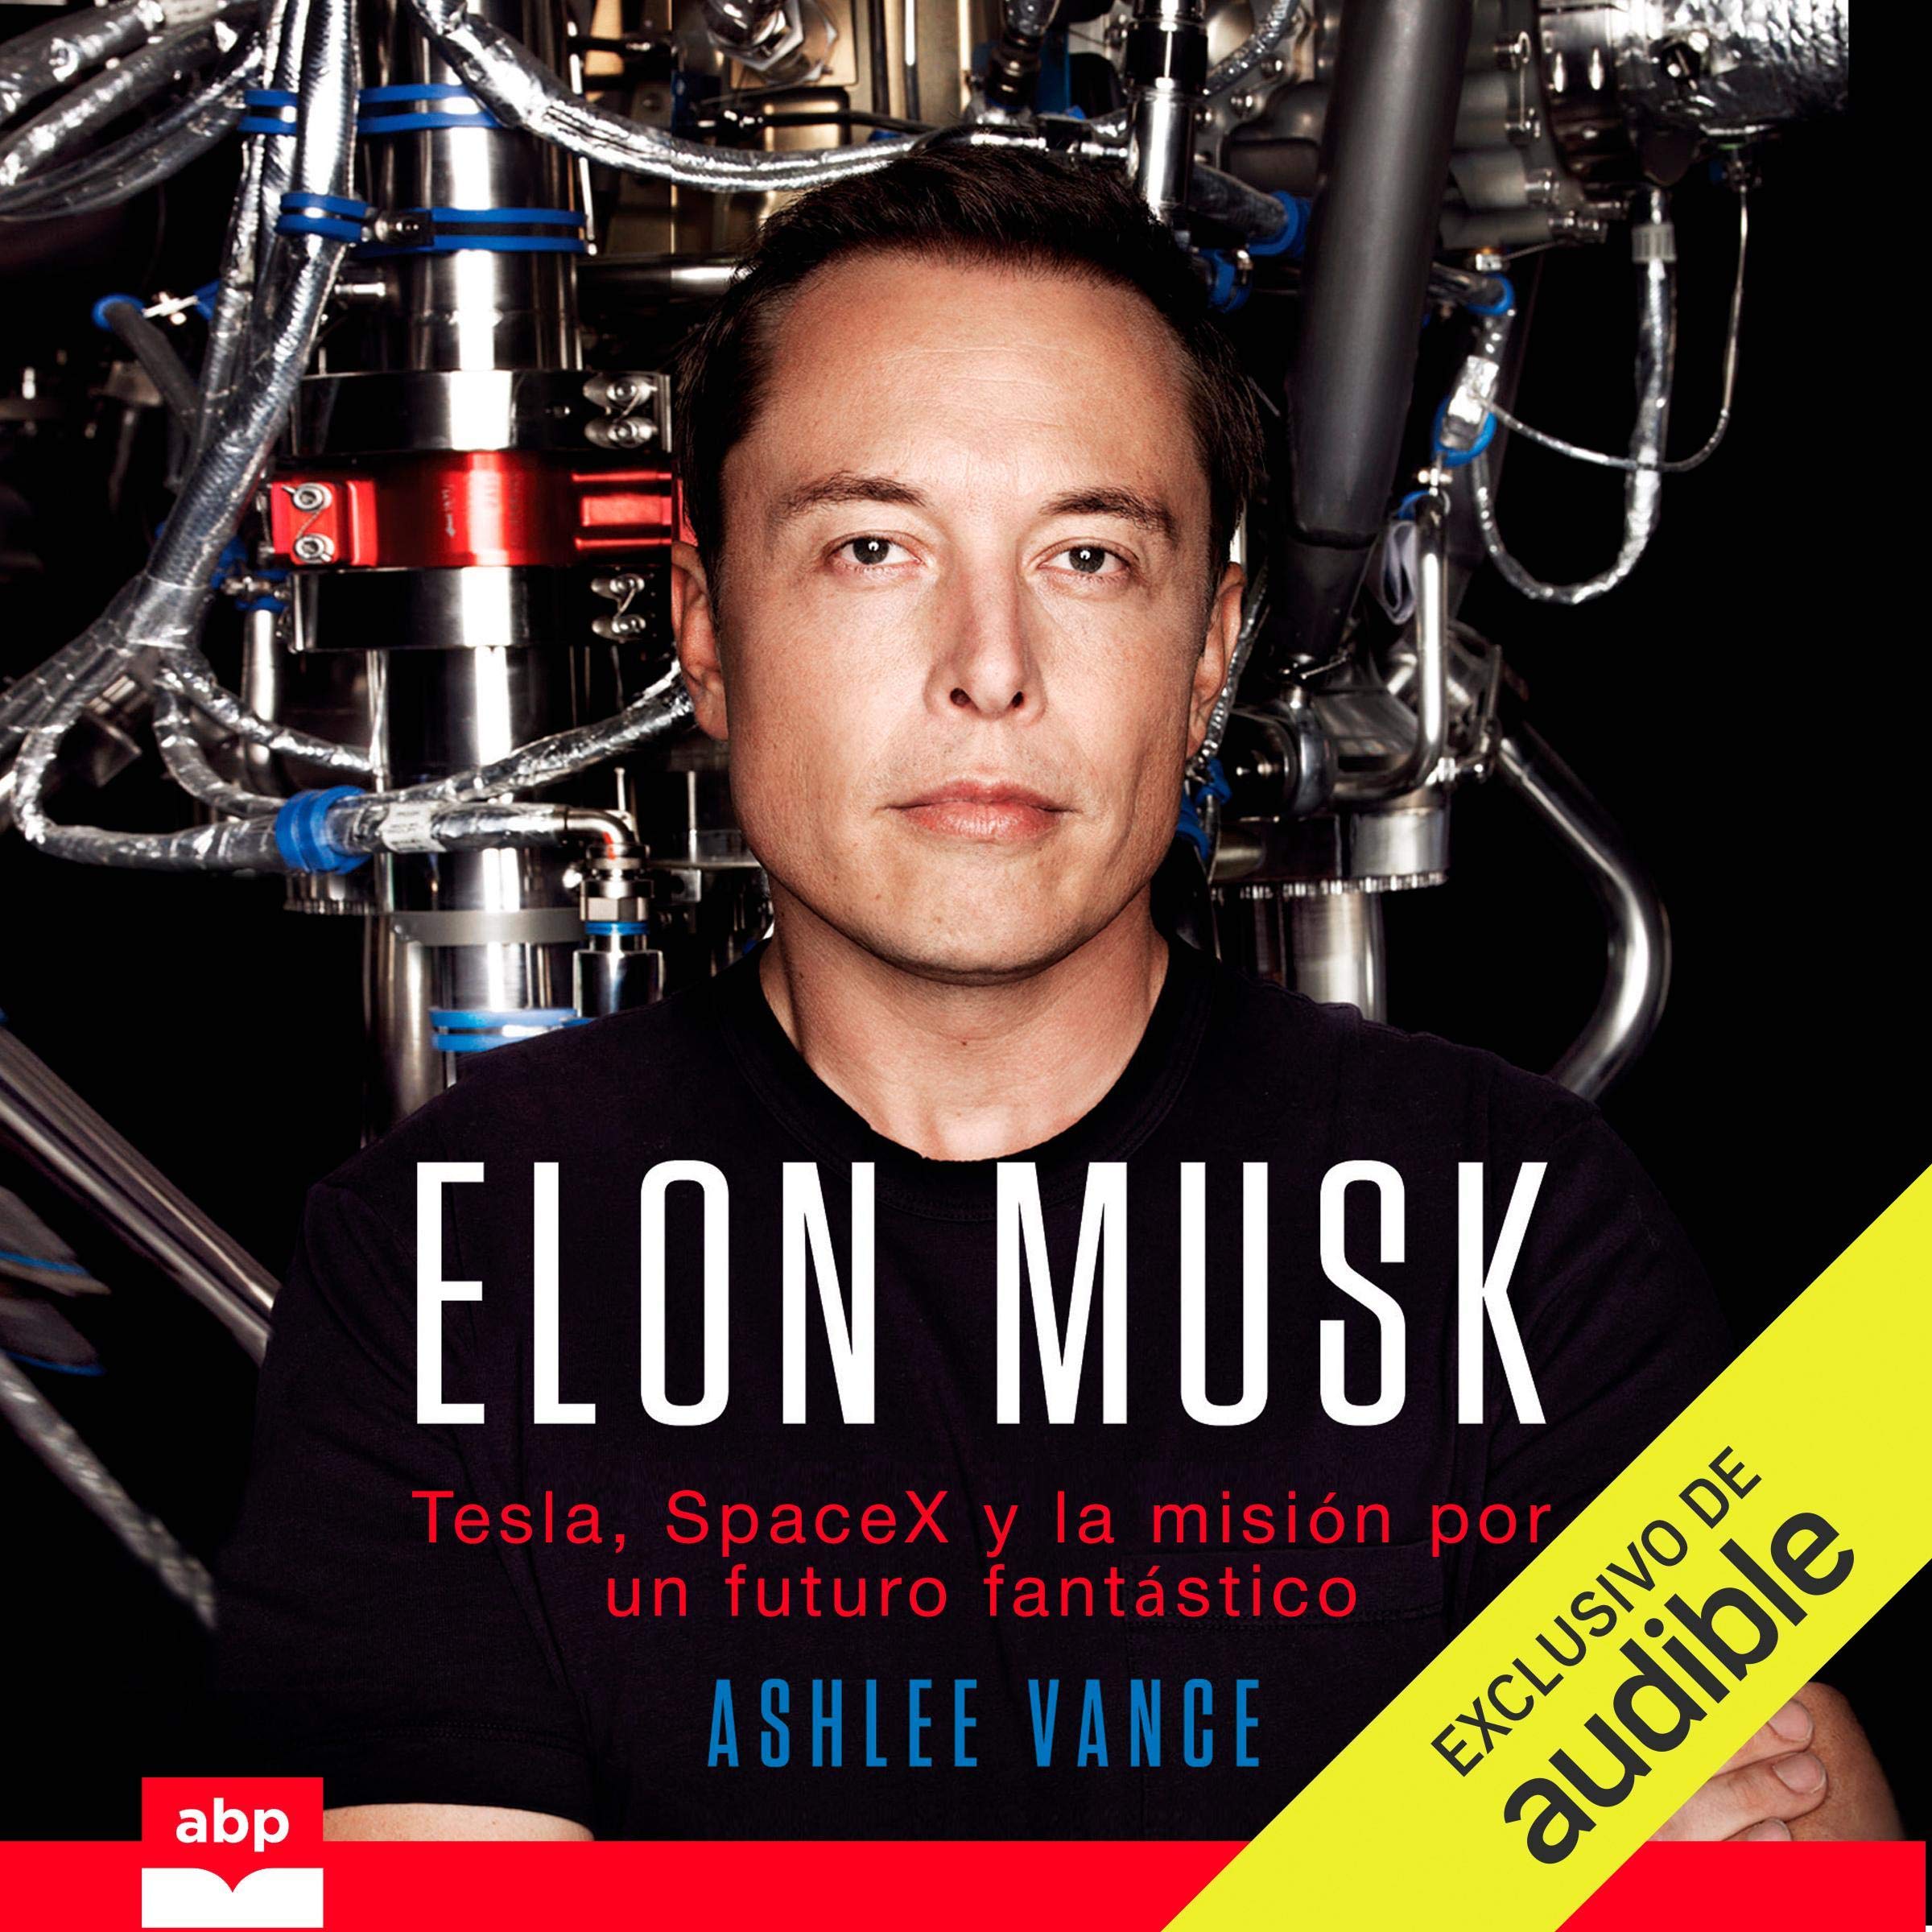 Elon Musk (Spanish Edition): Tesla, SpaceX y la misión por un futuro fantástico [Tesla, SpaceX and the Quest for a Fantastic Future]